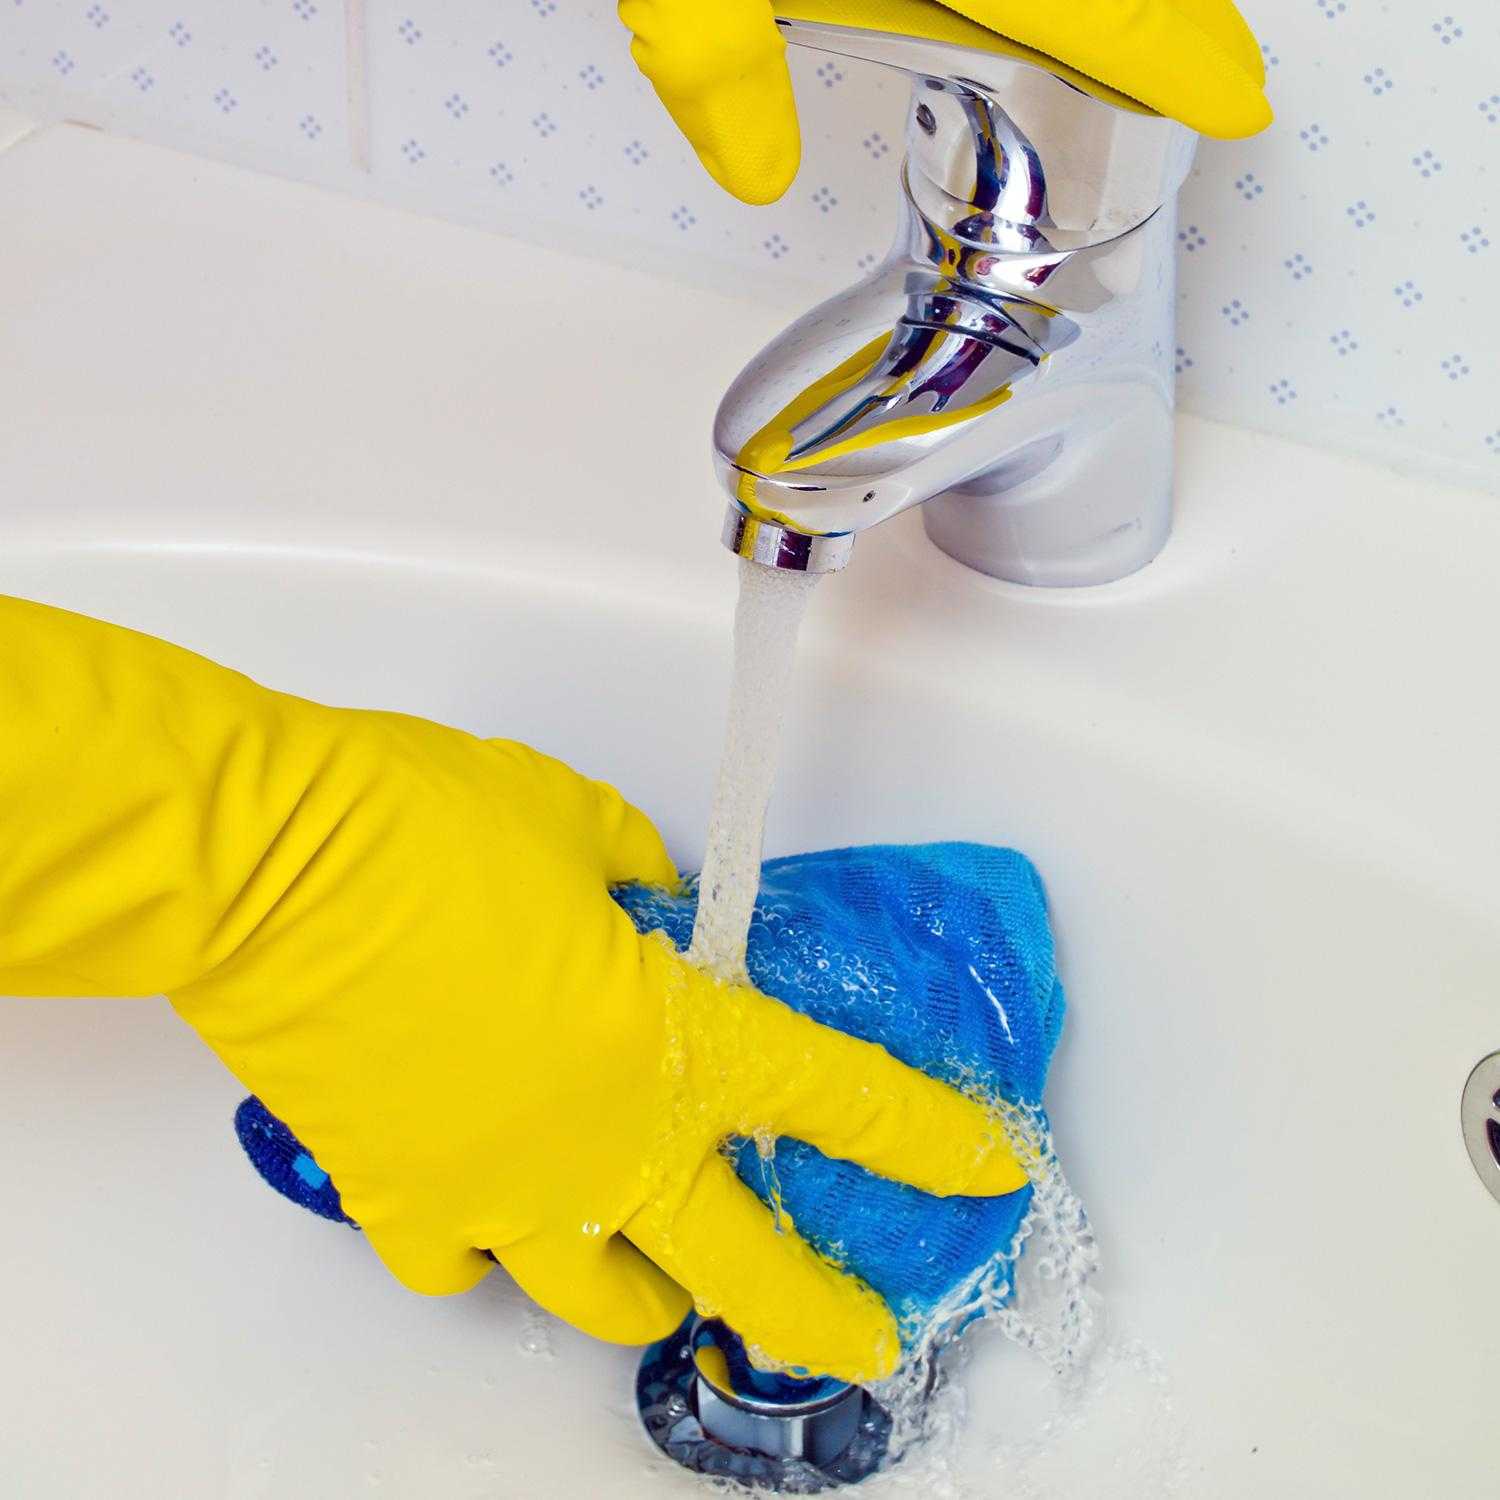 Как очистить ванну от ржавчины при помощи народных методов и бытовой химии